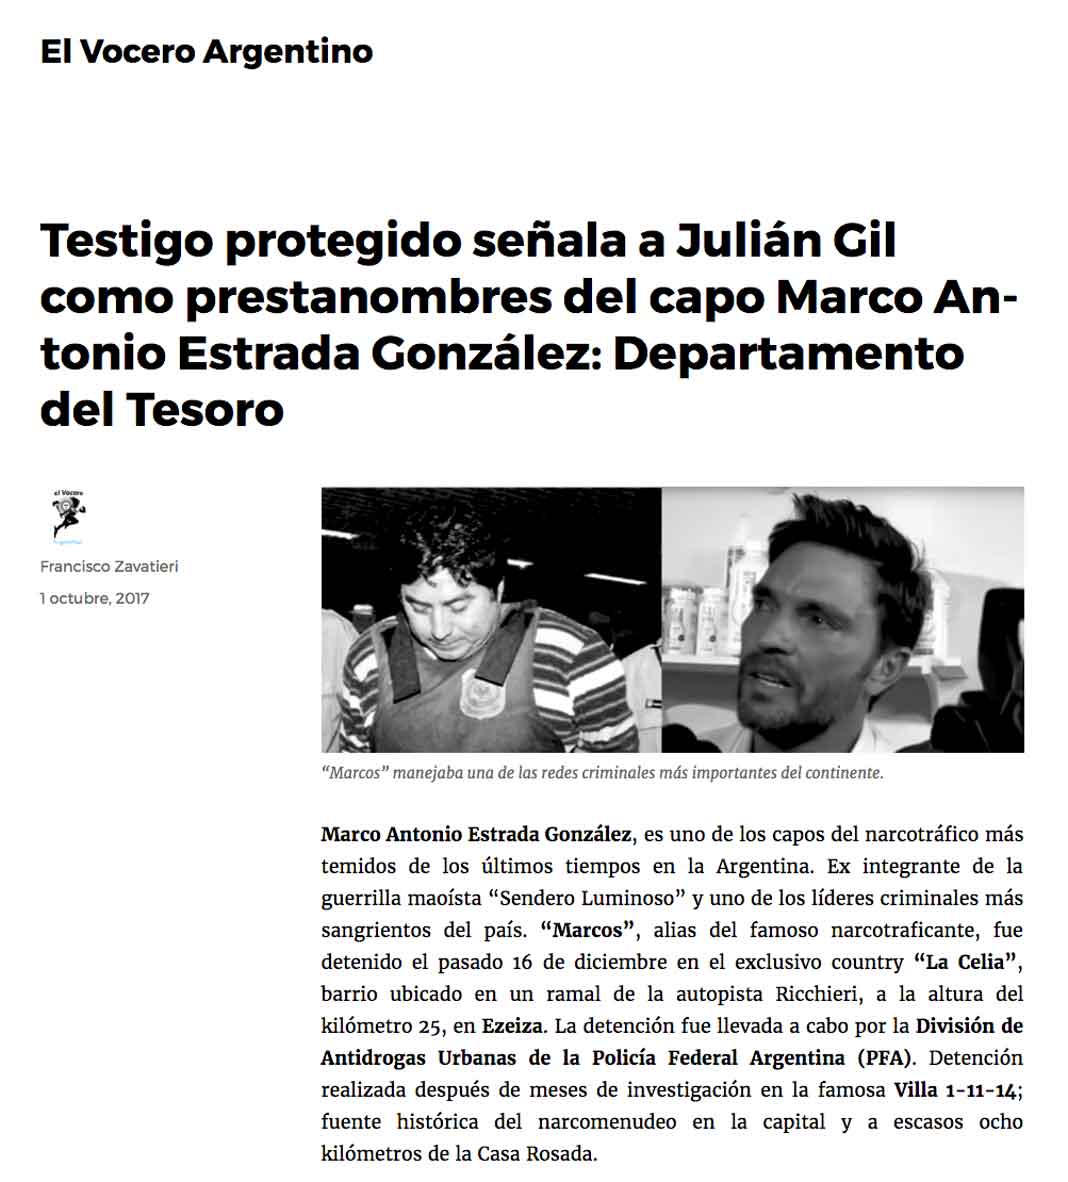 Un blog llamado El Vocero Argentino dice que el Departamento del Tesoro dice que un testigo protegido involucra a Julián